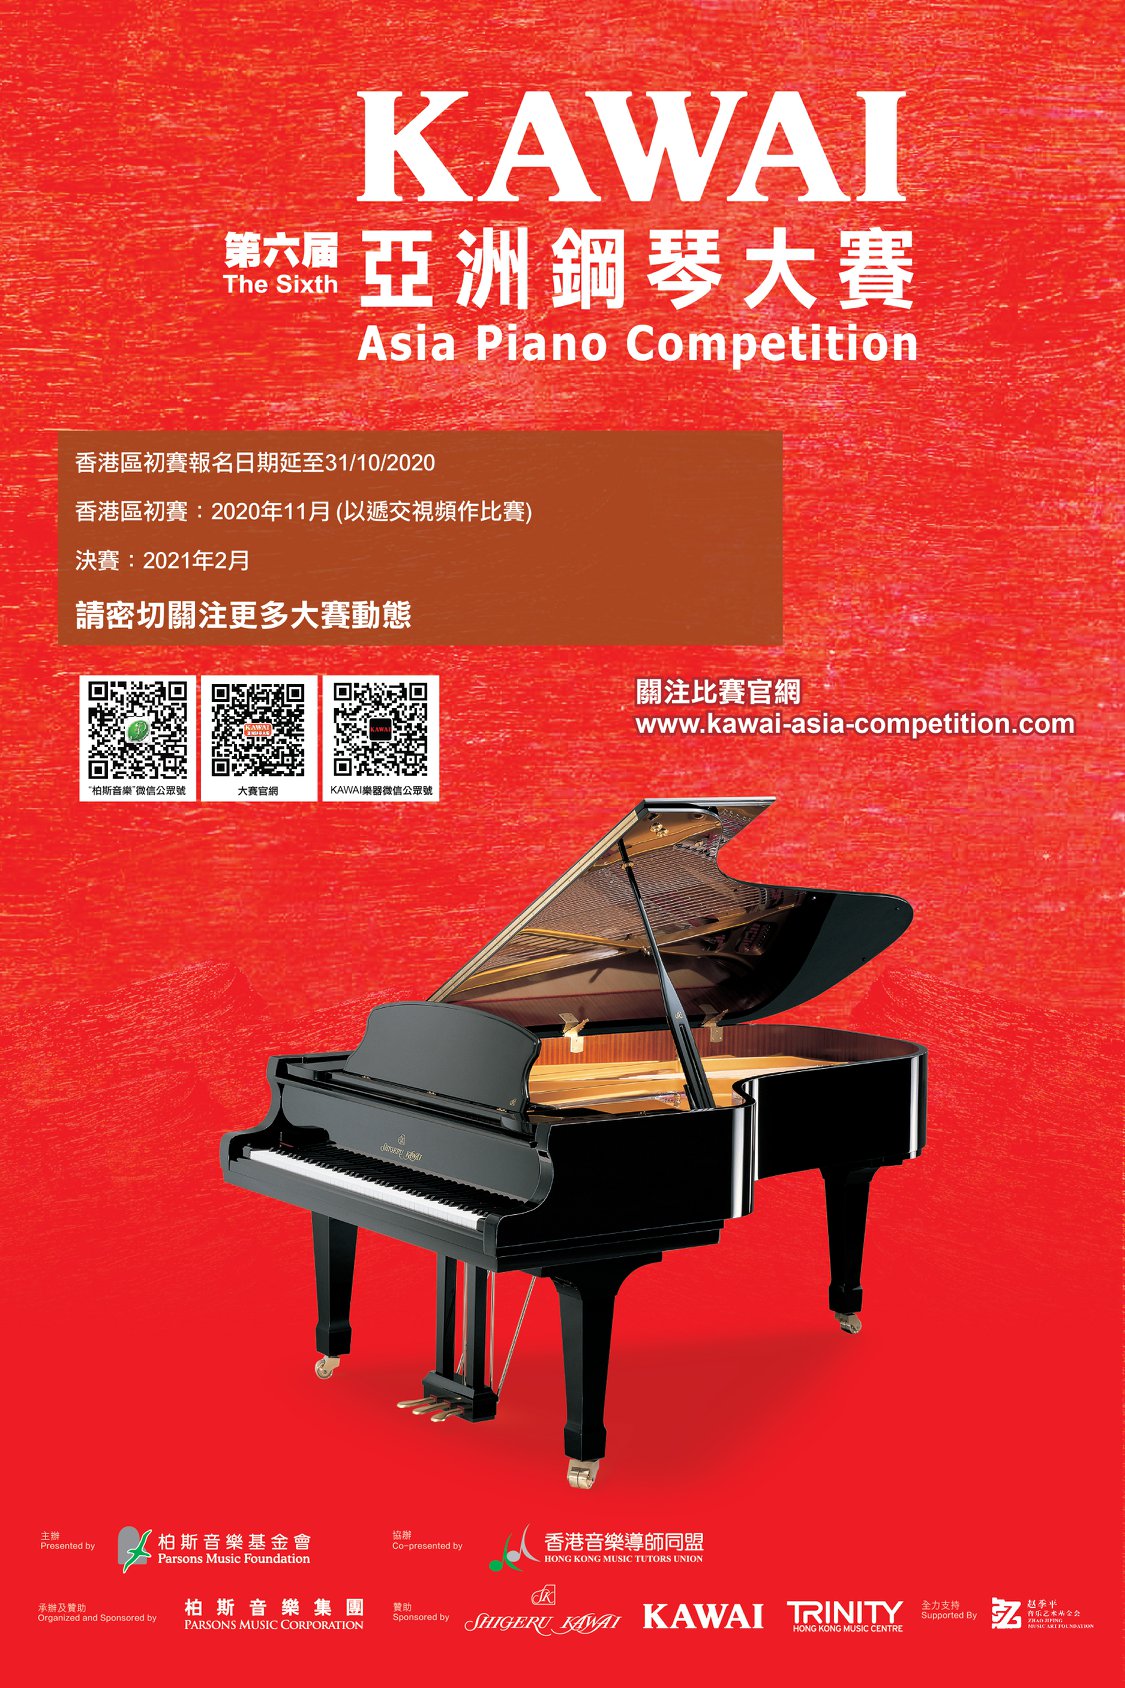 【第六屆KAWAI亞洲鋼琴大賽】香港區初賽即將來襲！ 第六屆KAWAI亞洲鋼琴大賽總決賽將於2021年2月在香港隆重舉行，而香港區初賽亦會於2020年11月進行。錯過了早前香港區的初賽報名，機會來啦！ 由即日至31/10/2020，只要透過以下網站報名即可。... 📣📣 「第六屆KAWAI亞洲鋼琴大賽」香港區初賽現正接受報名！📣📣  網上報名：festivalwalk 港澳賽區報名日期：即日至31/10/2020